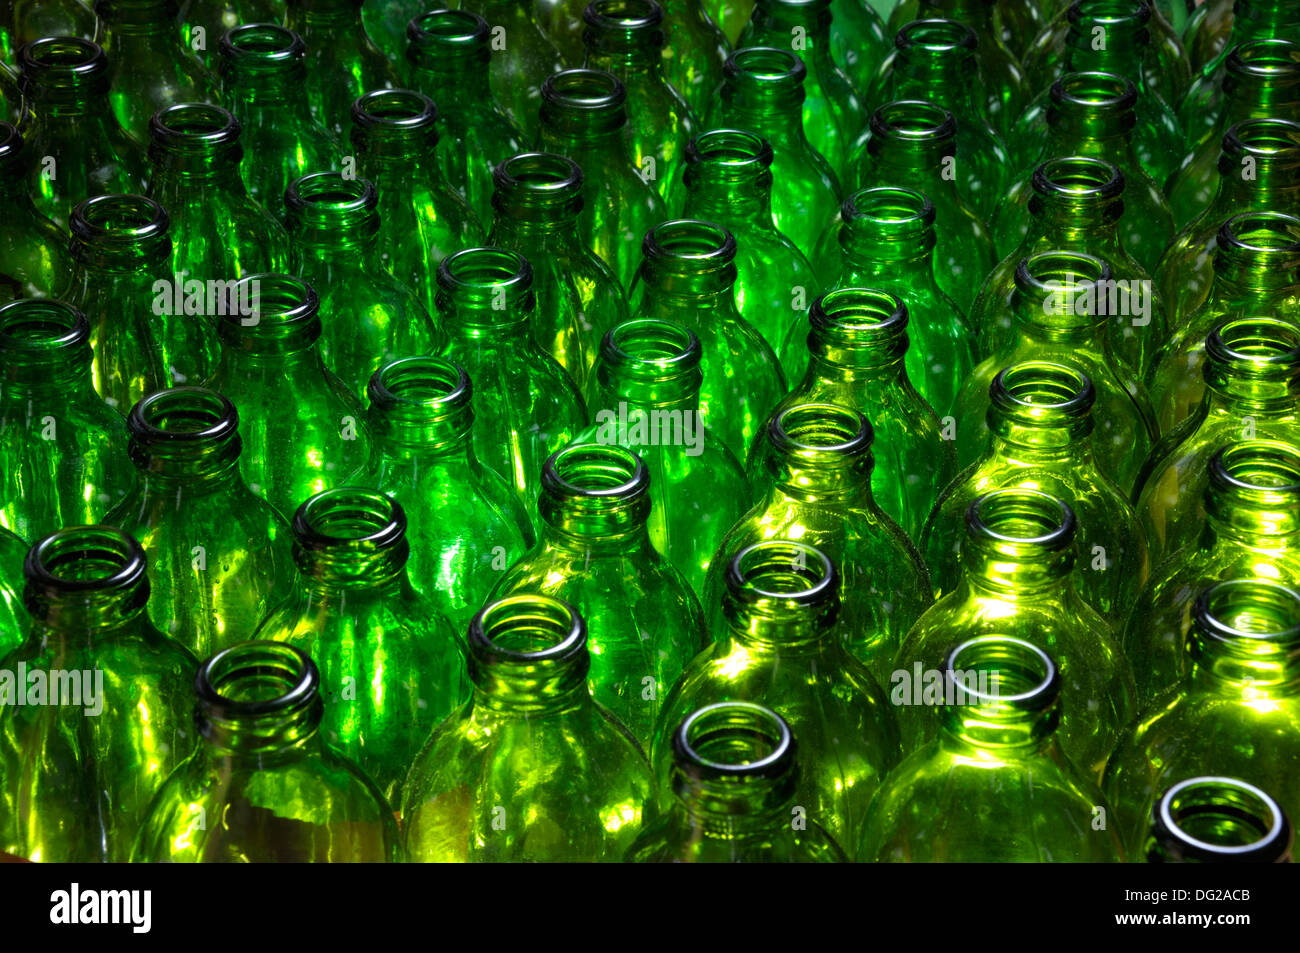 Empty green beer bottles Stock Photo